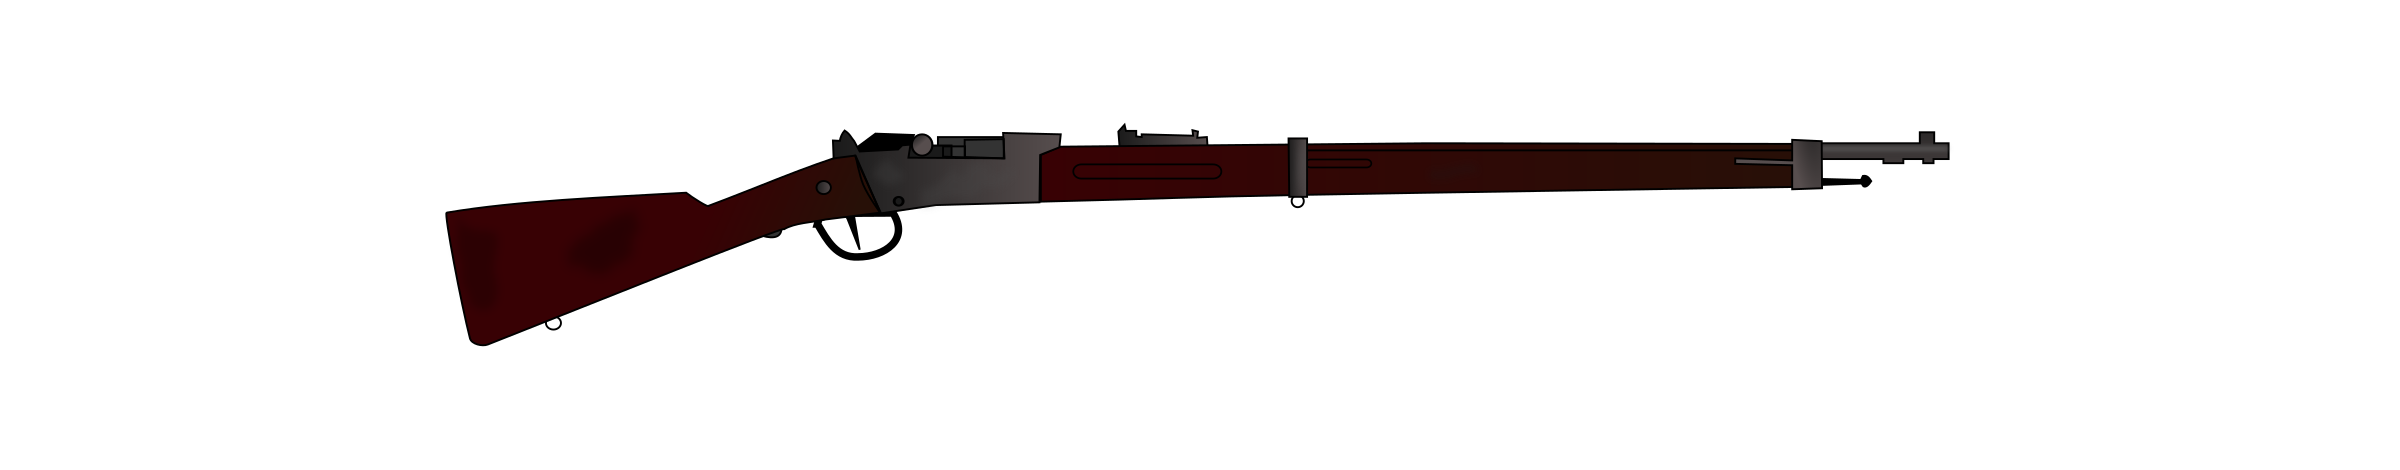 clipart gun air rifle